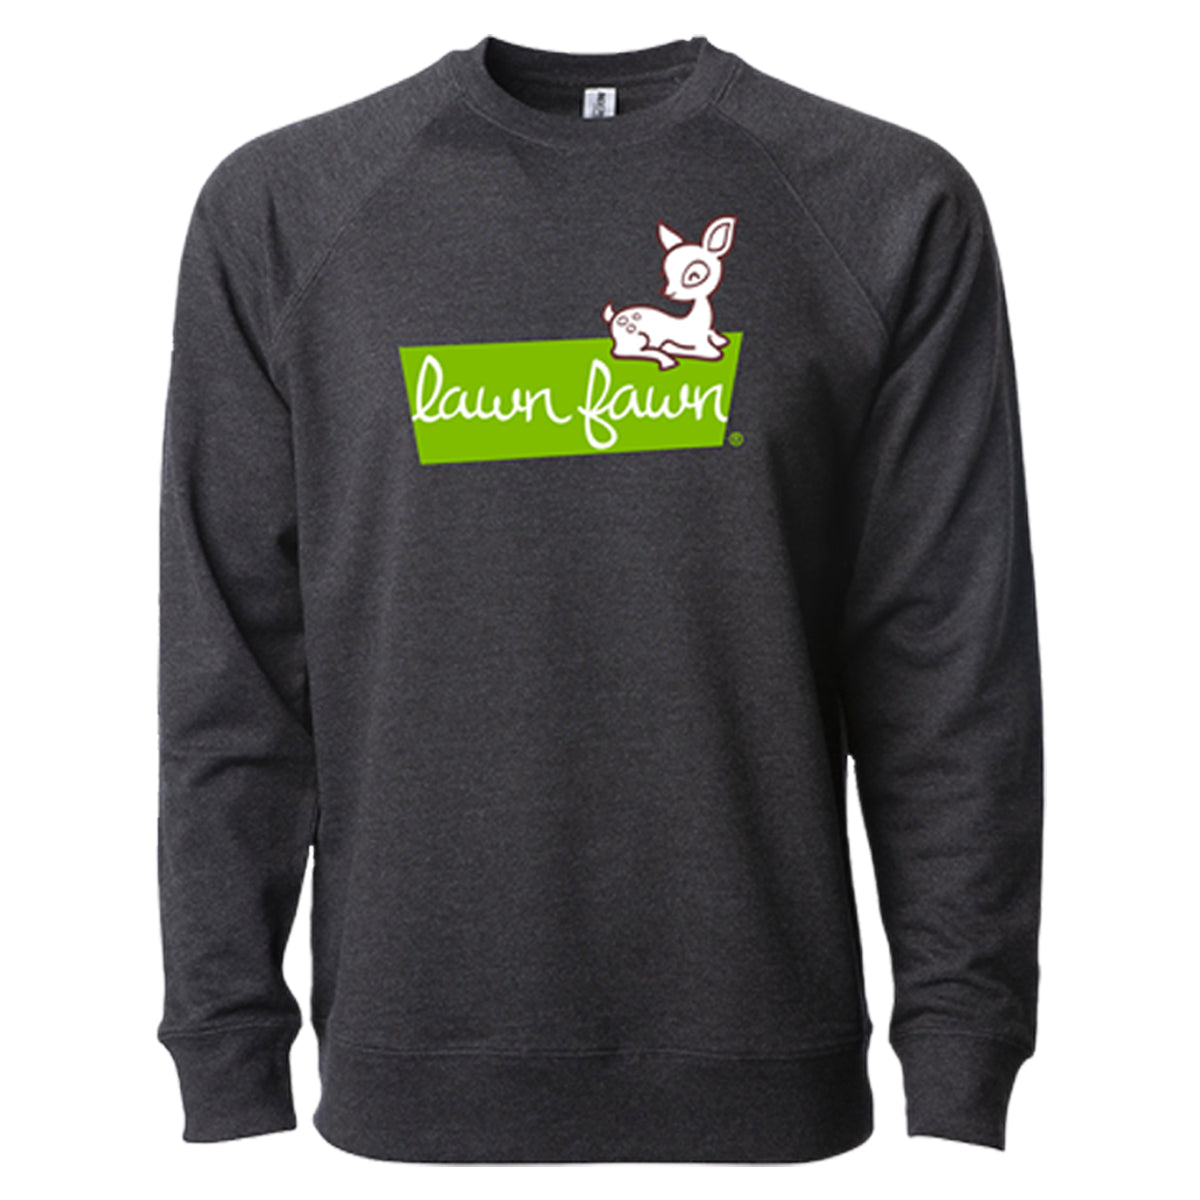 lawn fawn sweatshirt - 3XL